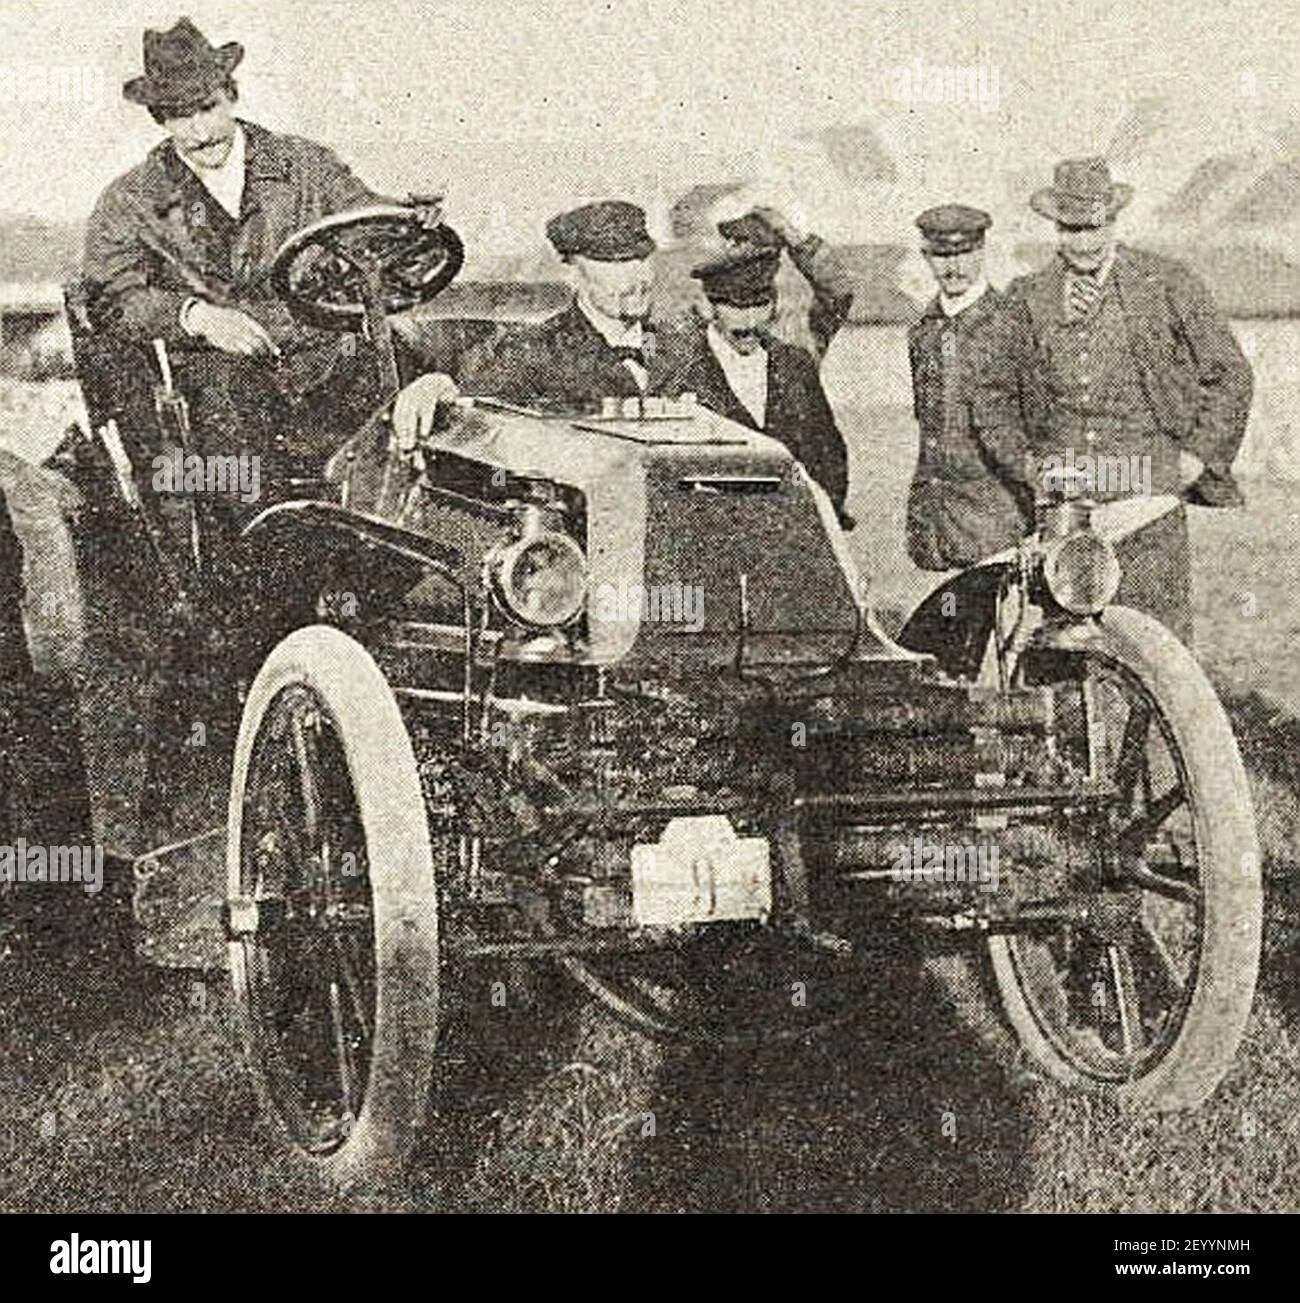 Pierre de Caters, vainqueur du Meeting d'Ostende 1901, sur Mors 24 hp de carrosserie J. Rotschild (la vie au Grand Air, 15 settembre 1901). Foto Stock